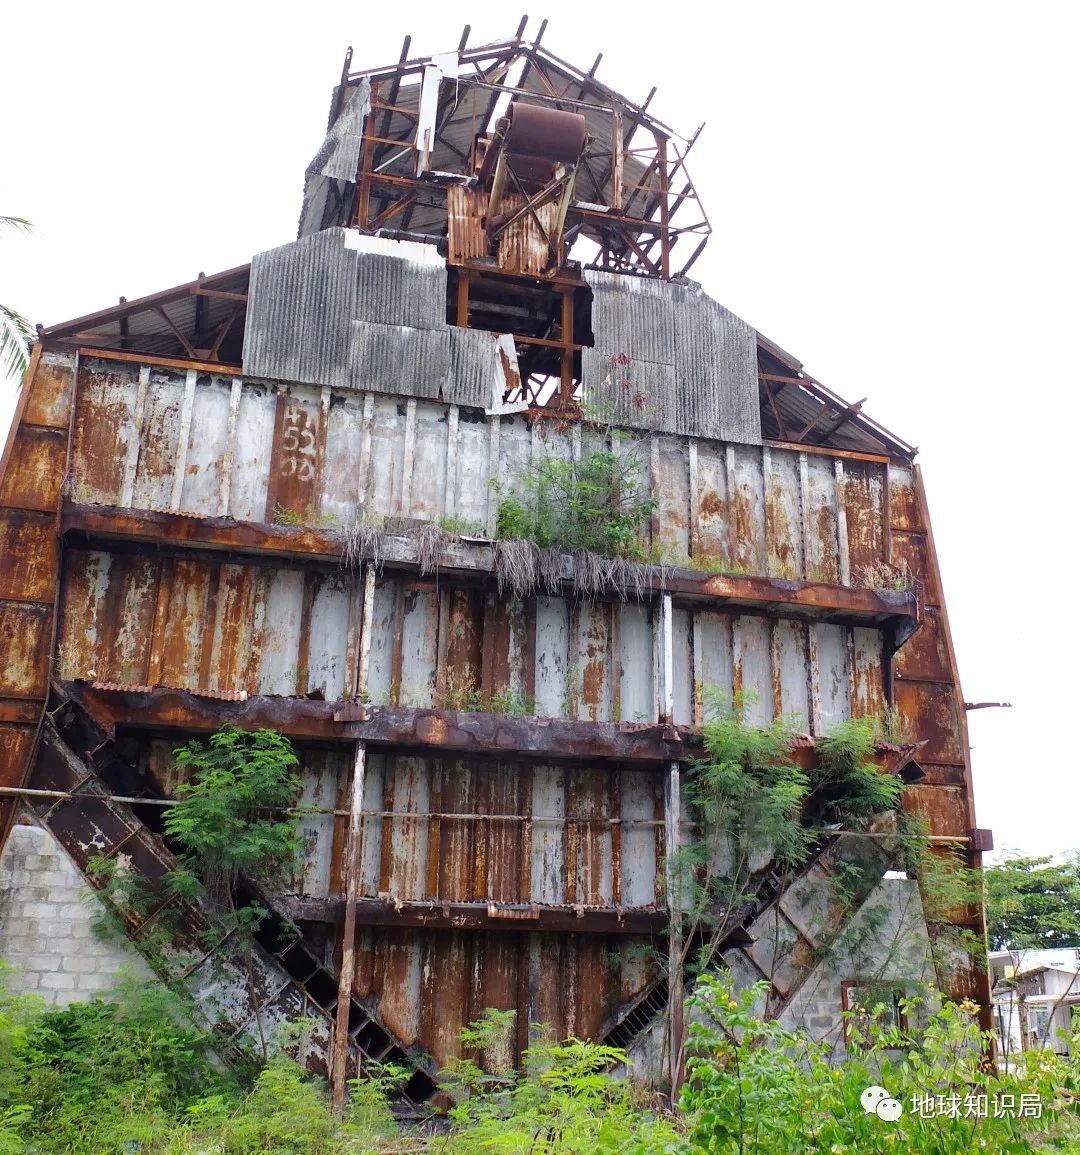 世界最小岛国瑙鲁如何濒临崩溃